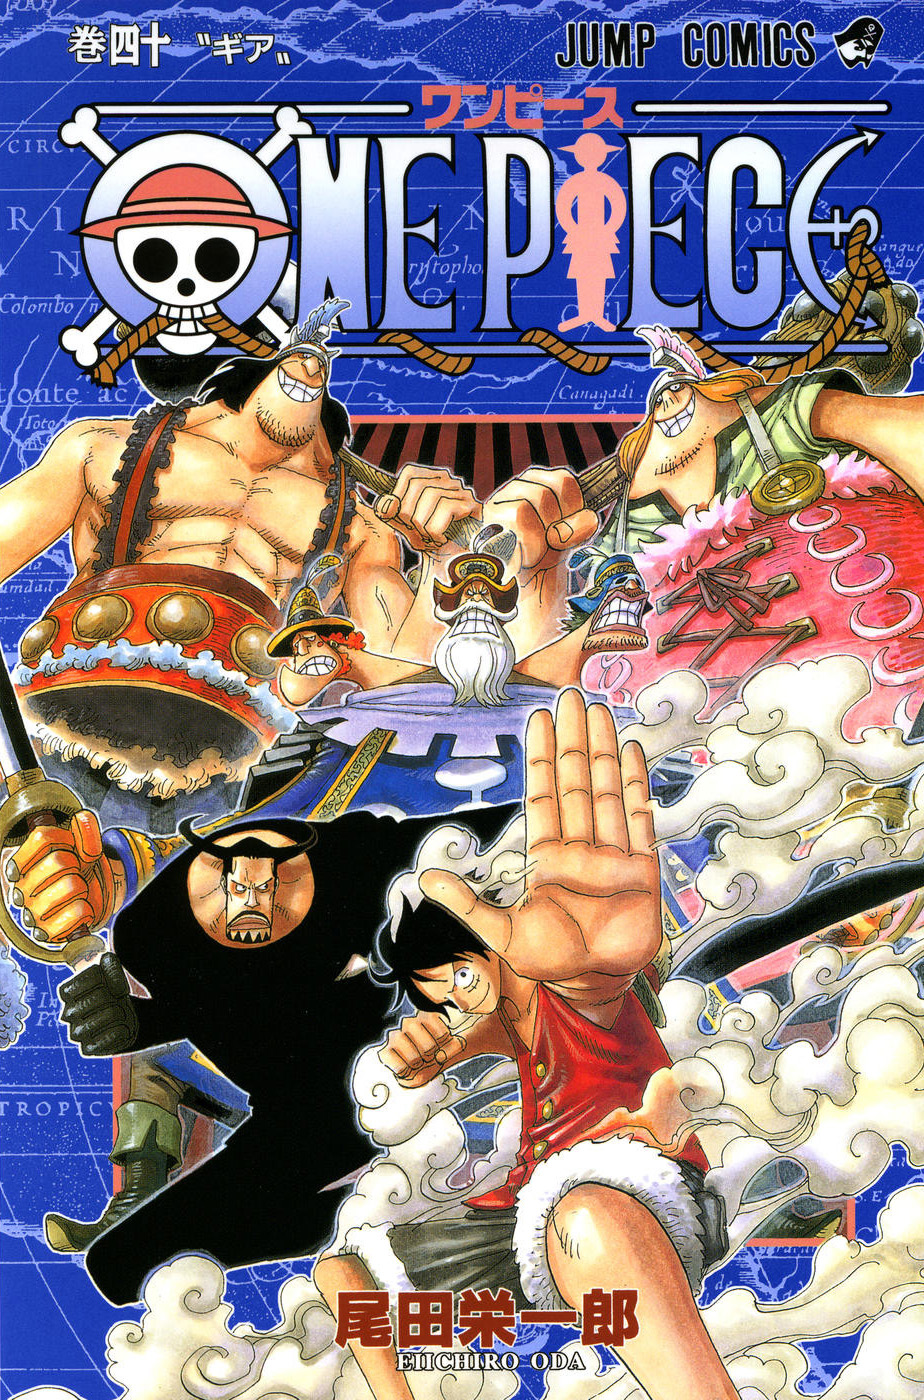 Volume 63, One Piece Wiki